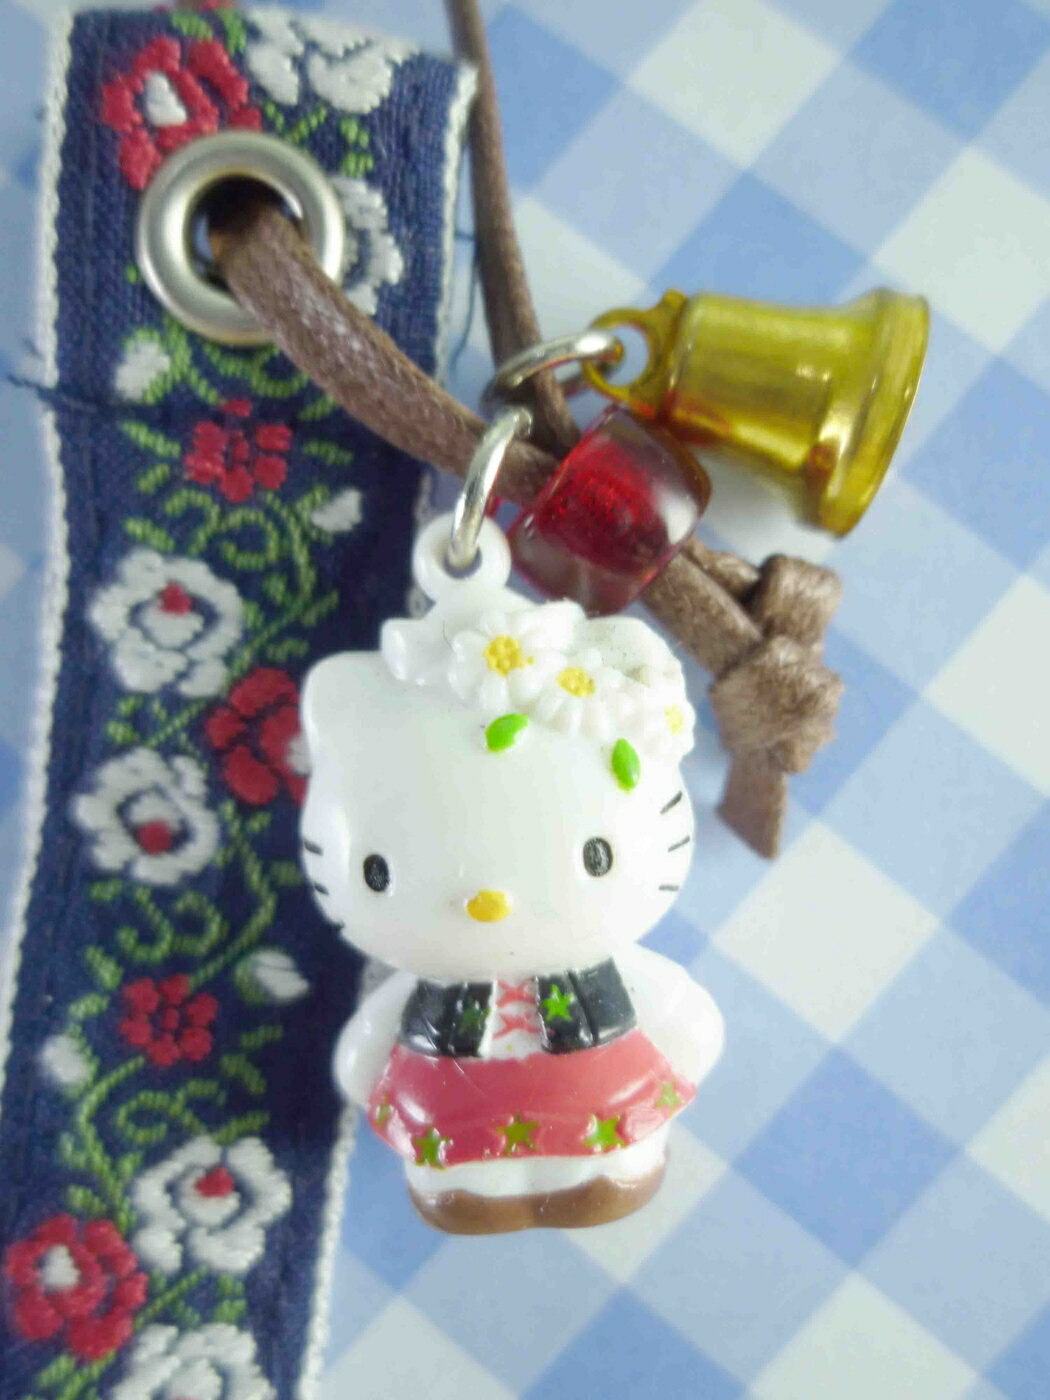 【震撼精品百貨】Hello Kitty 凱蒂貓 限定版手機吊飾-瑞士 震撼日式精品百貨